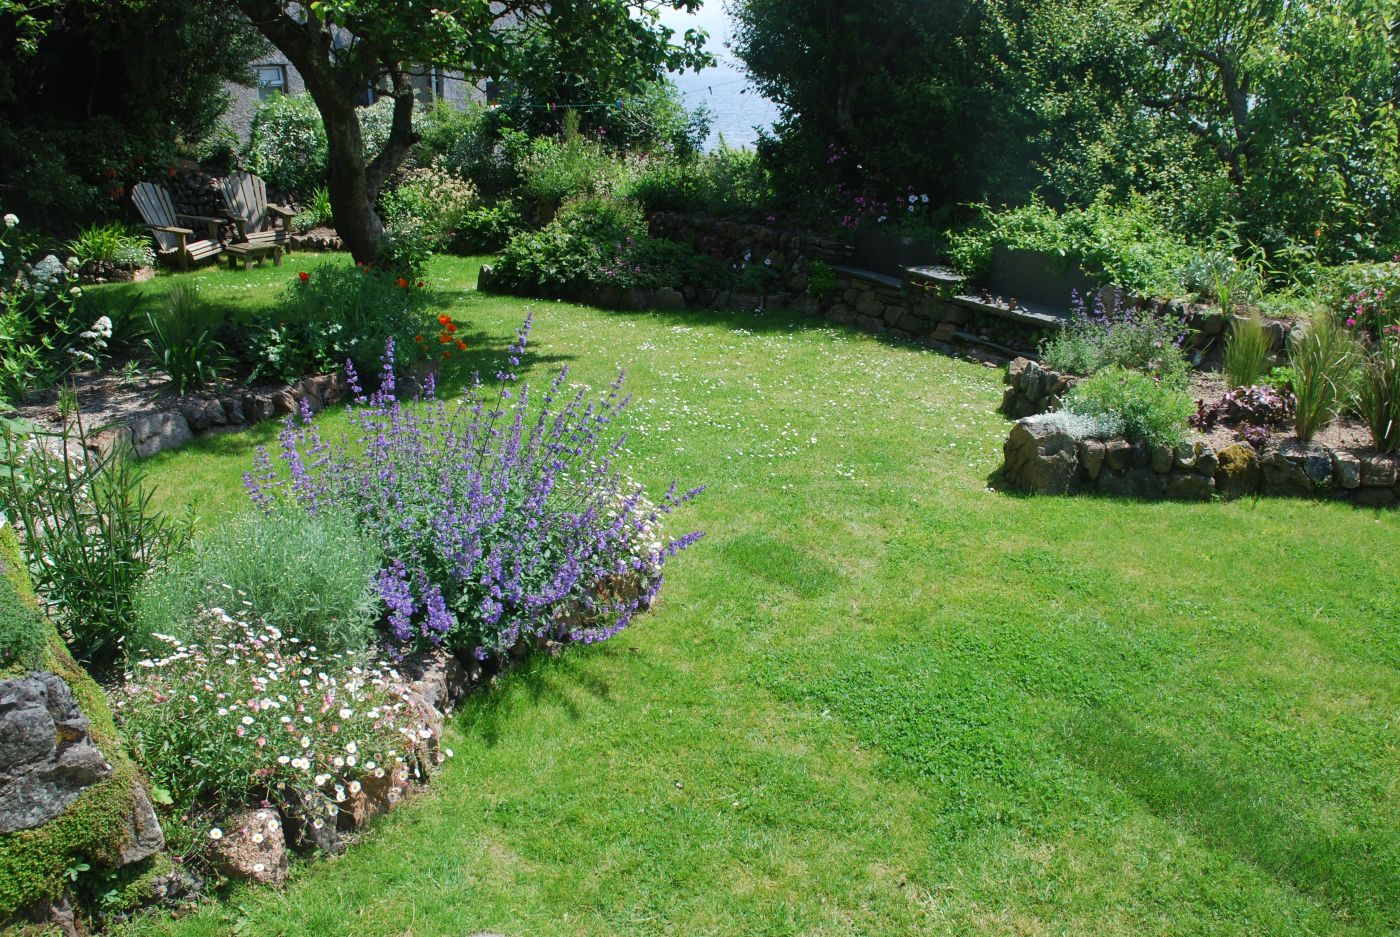 Cilff-top garden, Coverack, Cornwall